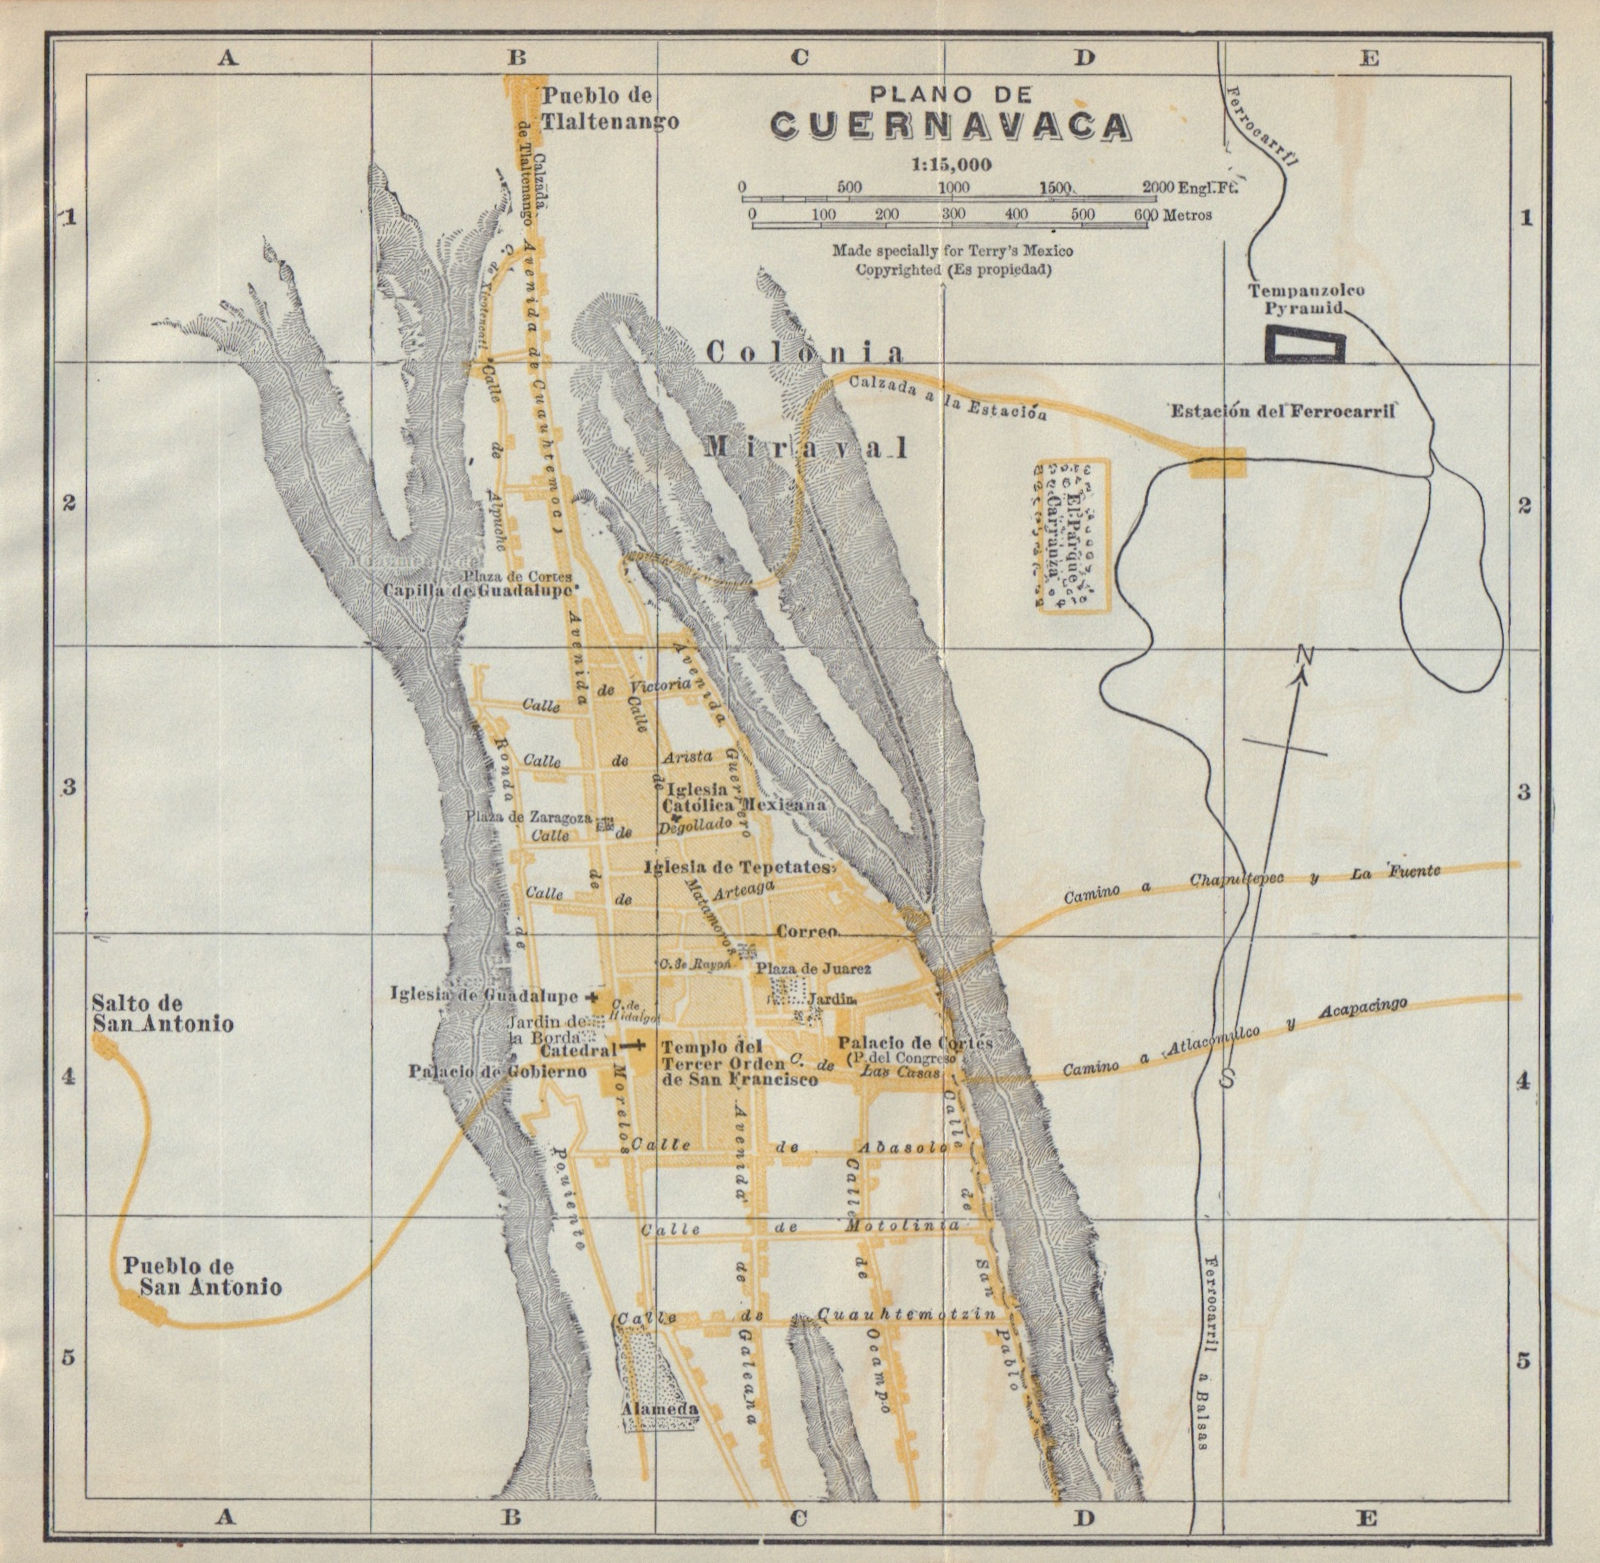 Plano de CUERNAVACA, Mexico. Mapa de la ciudad. City/town plan 1938 old